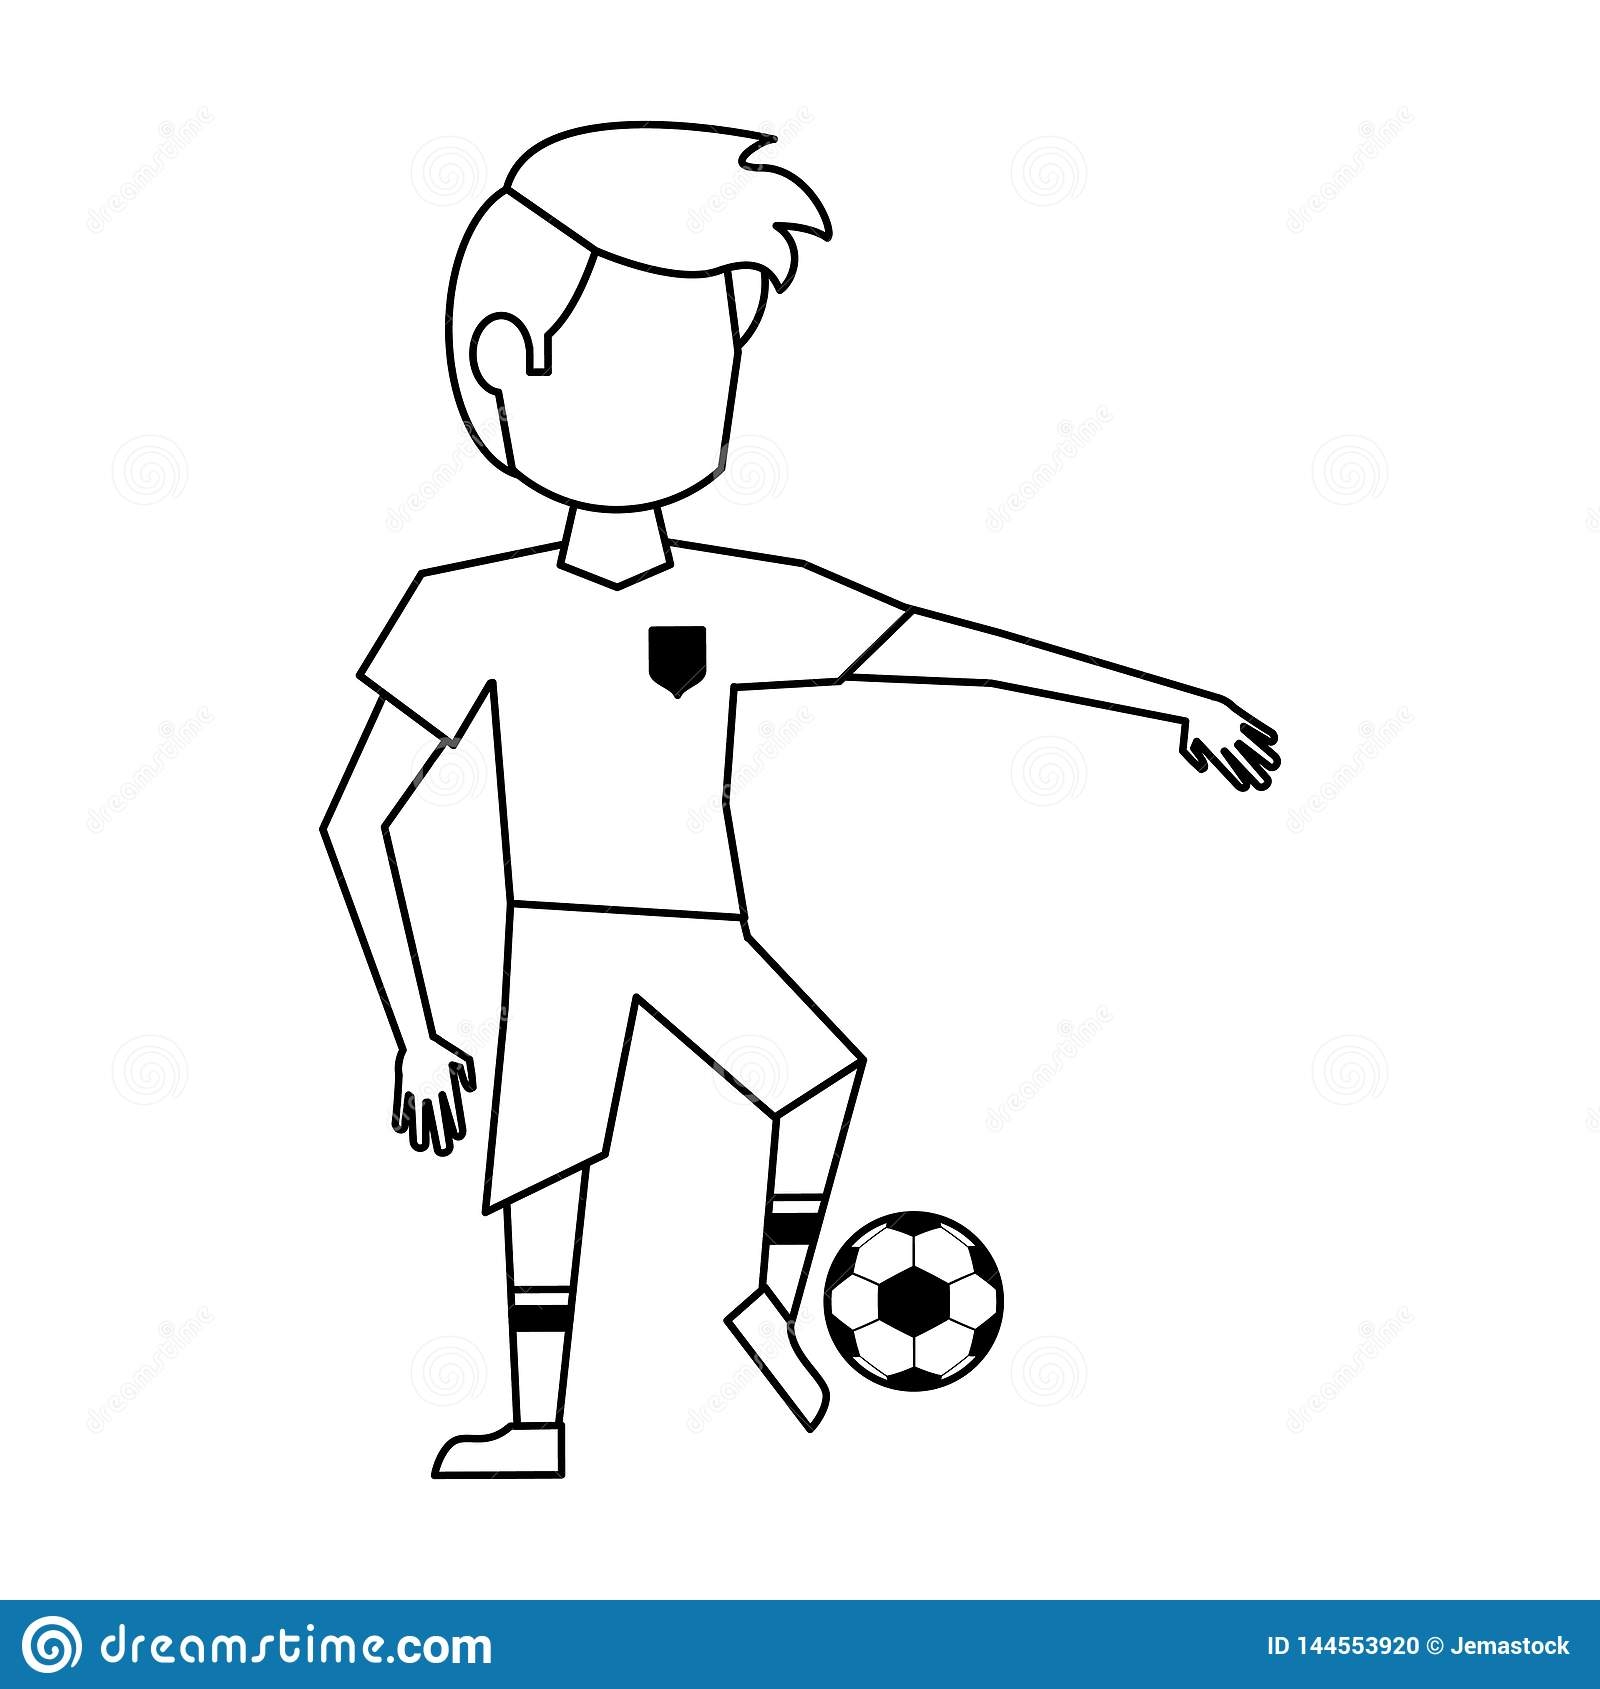 Футболист схематичный рисунок